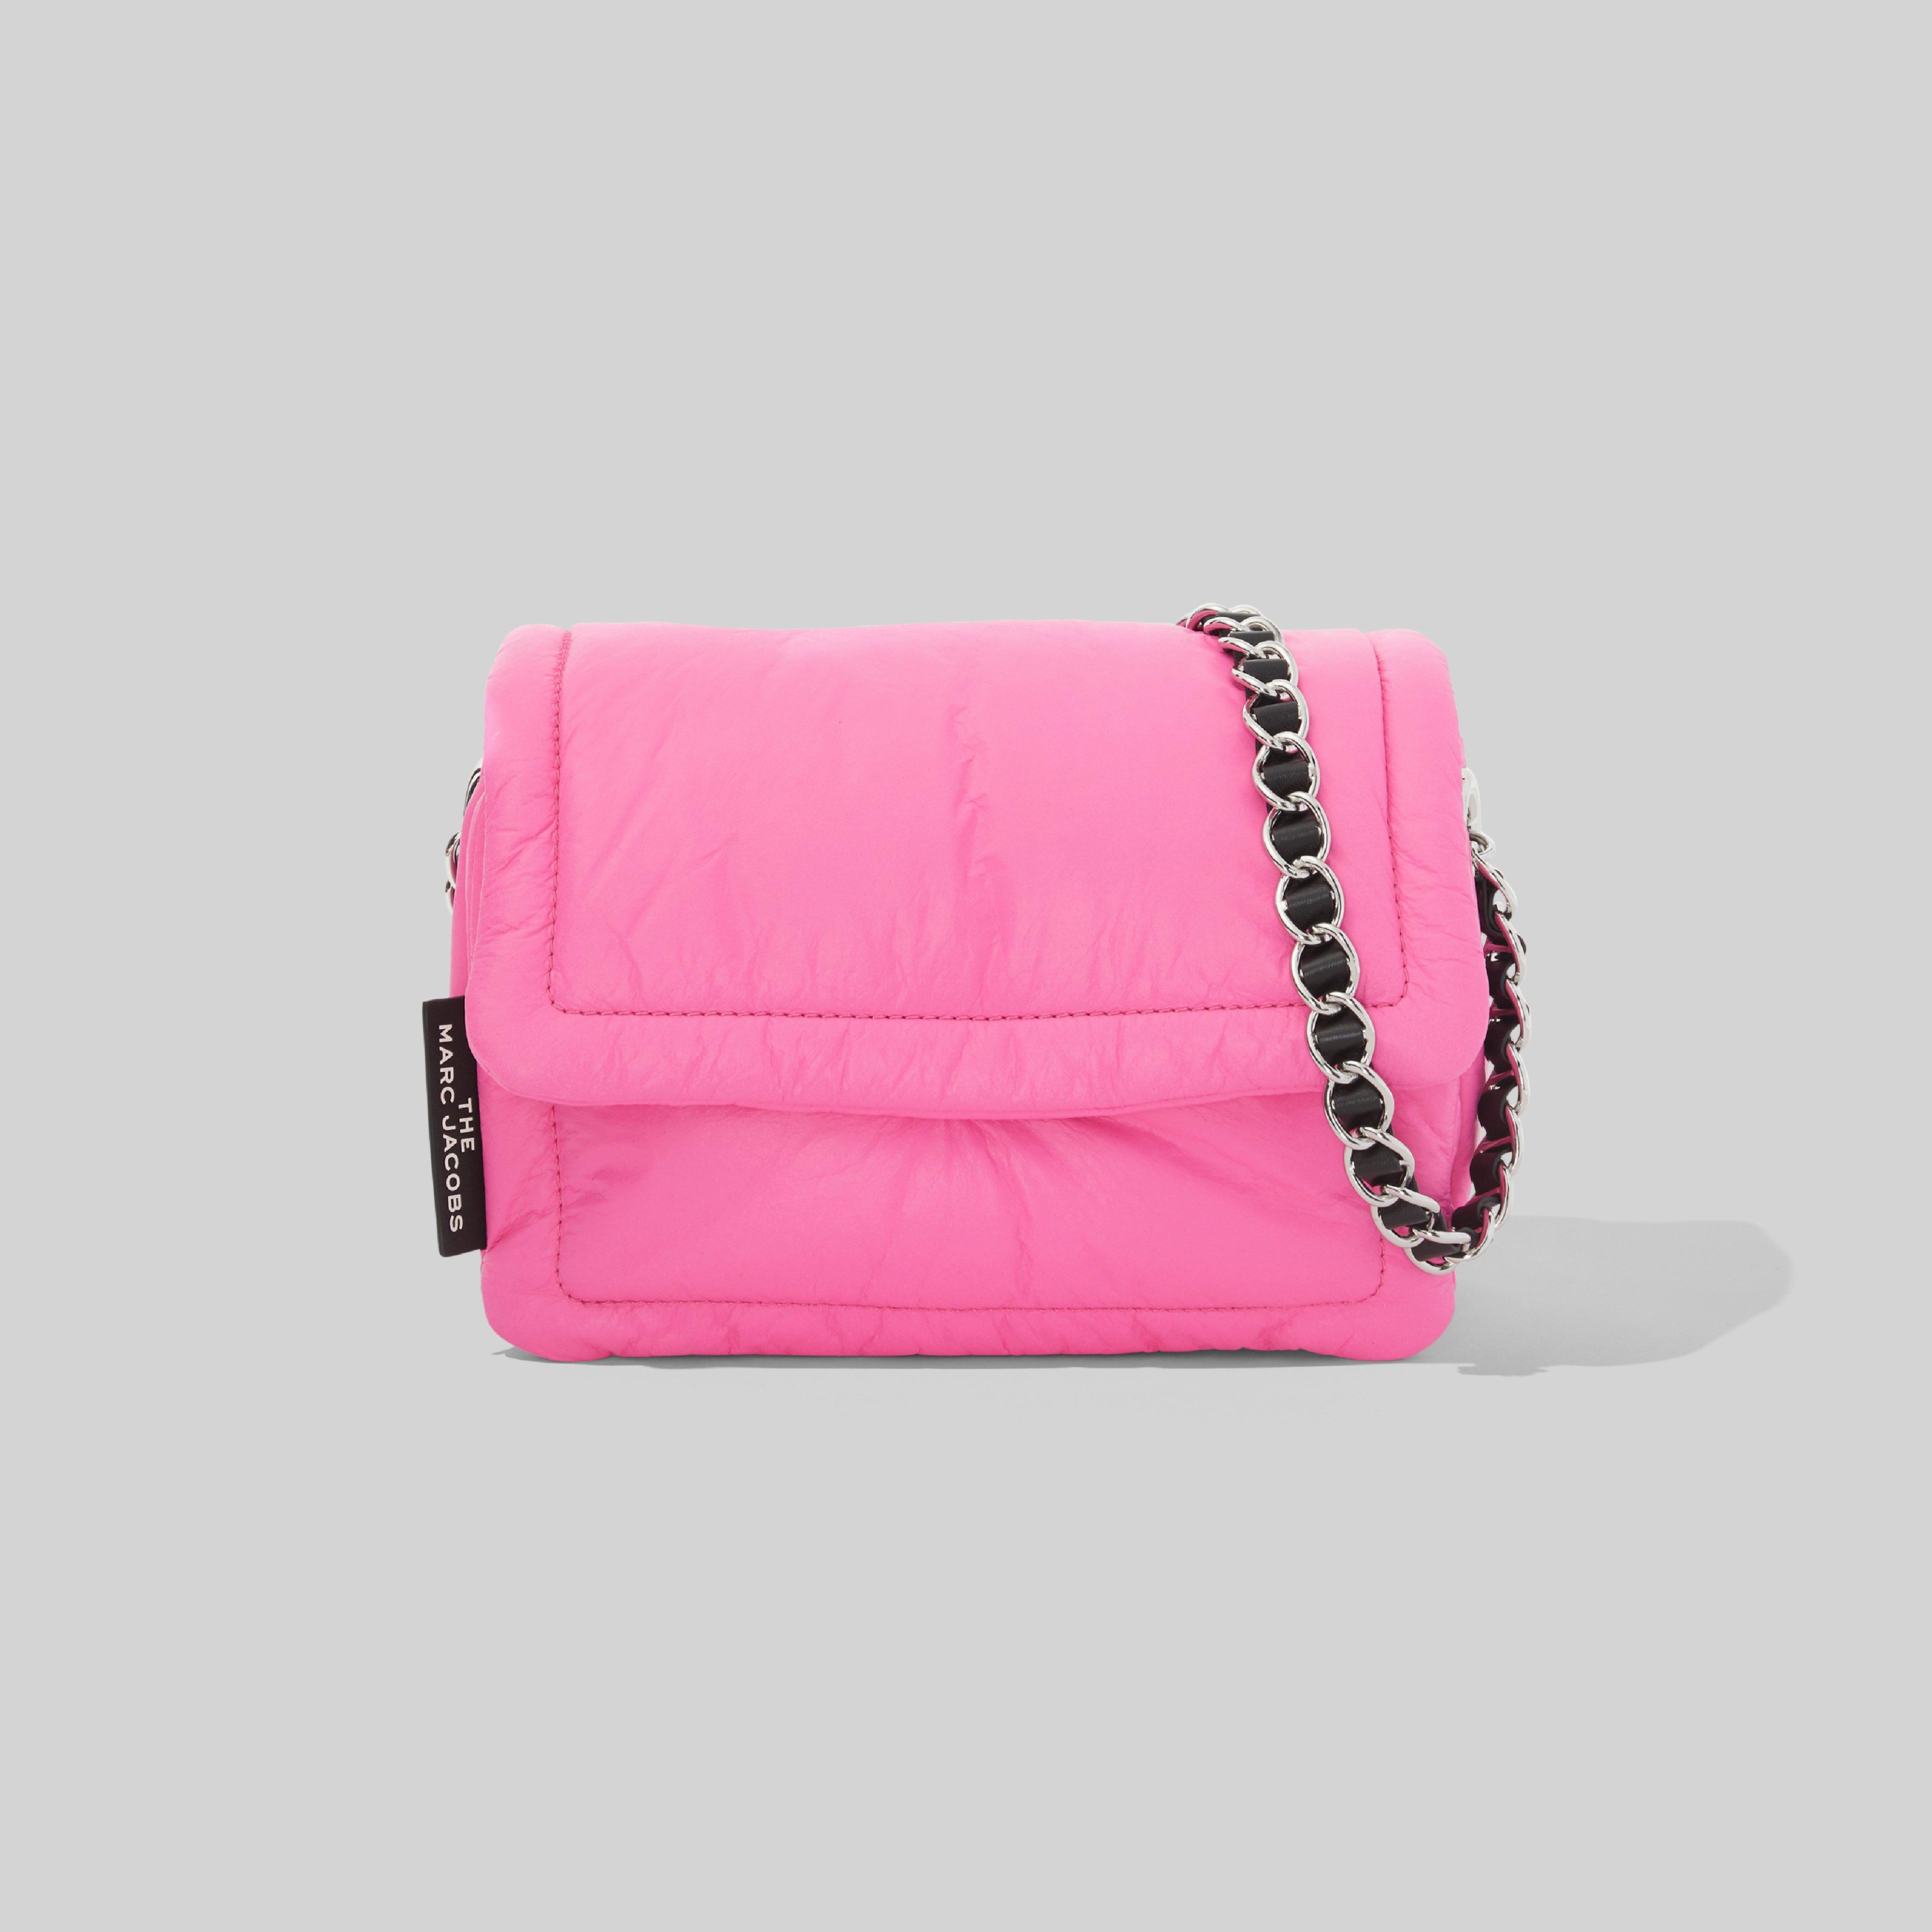 marc jacobs pillow bag pink